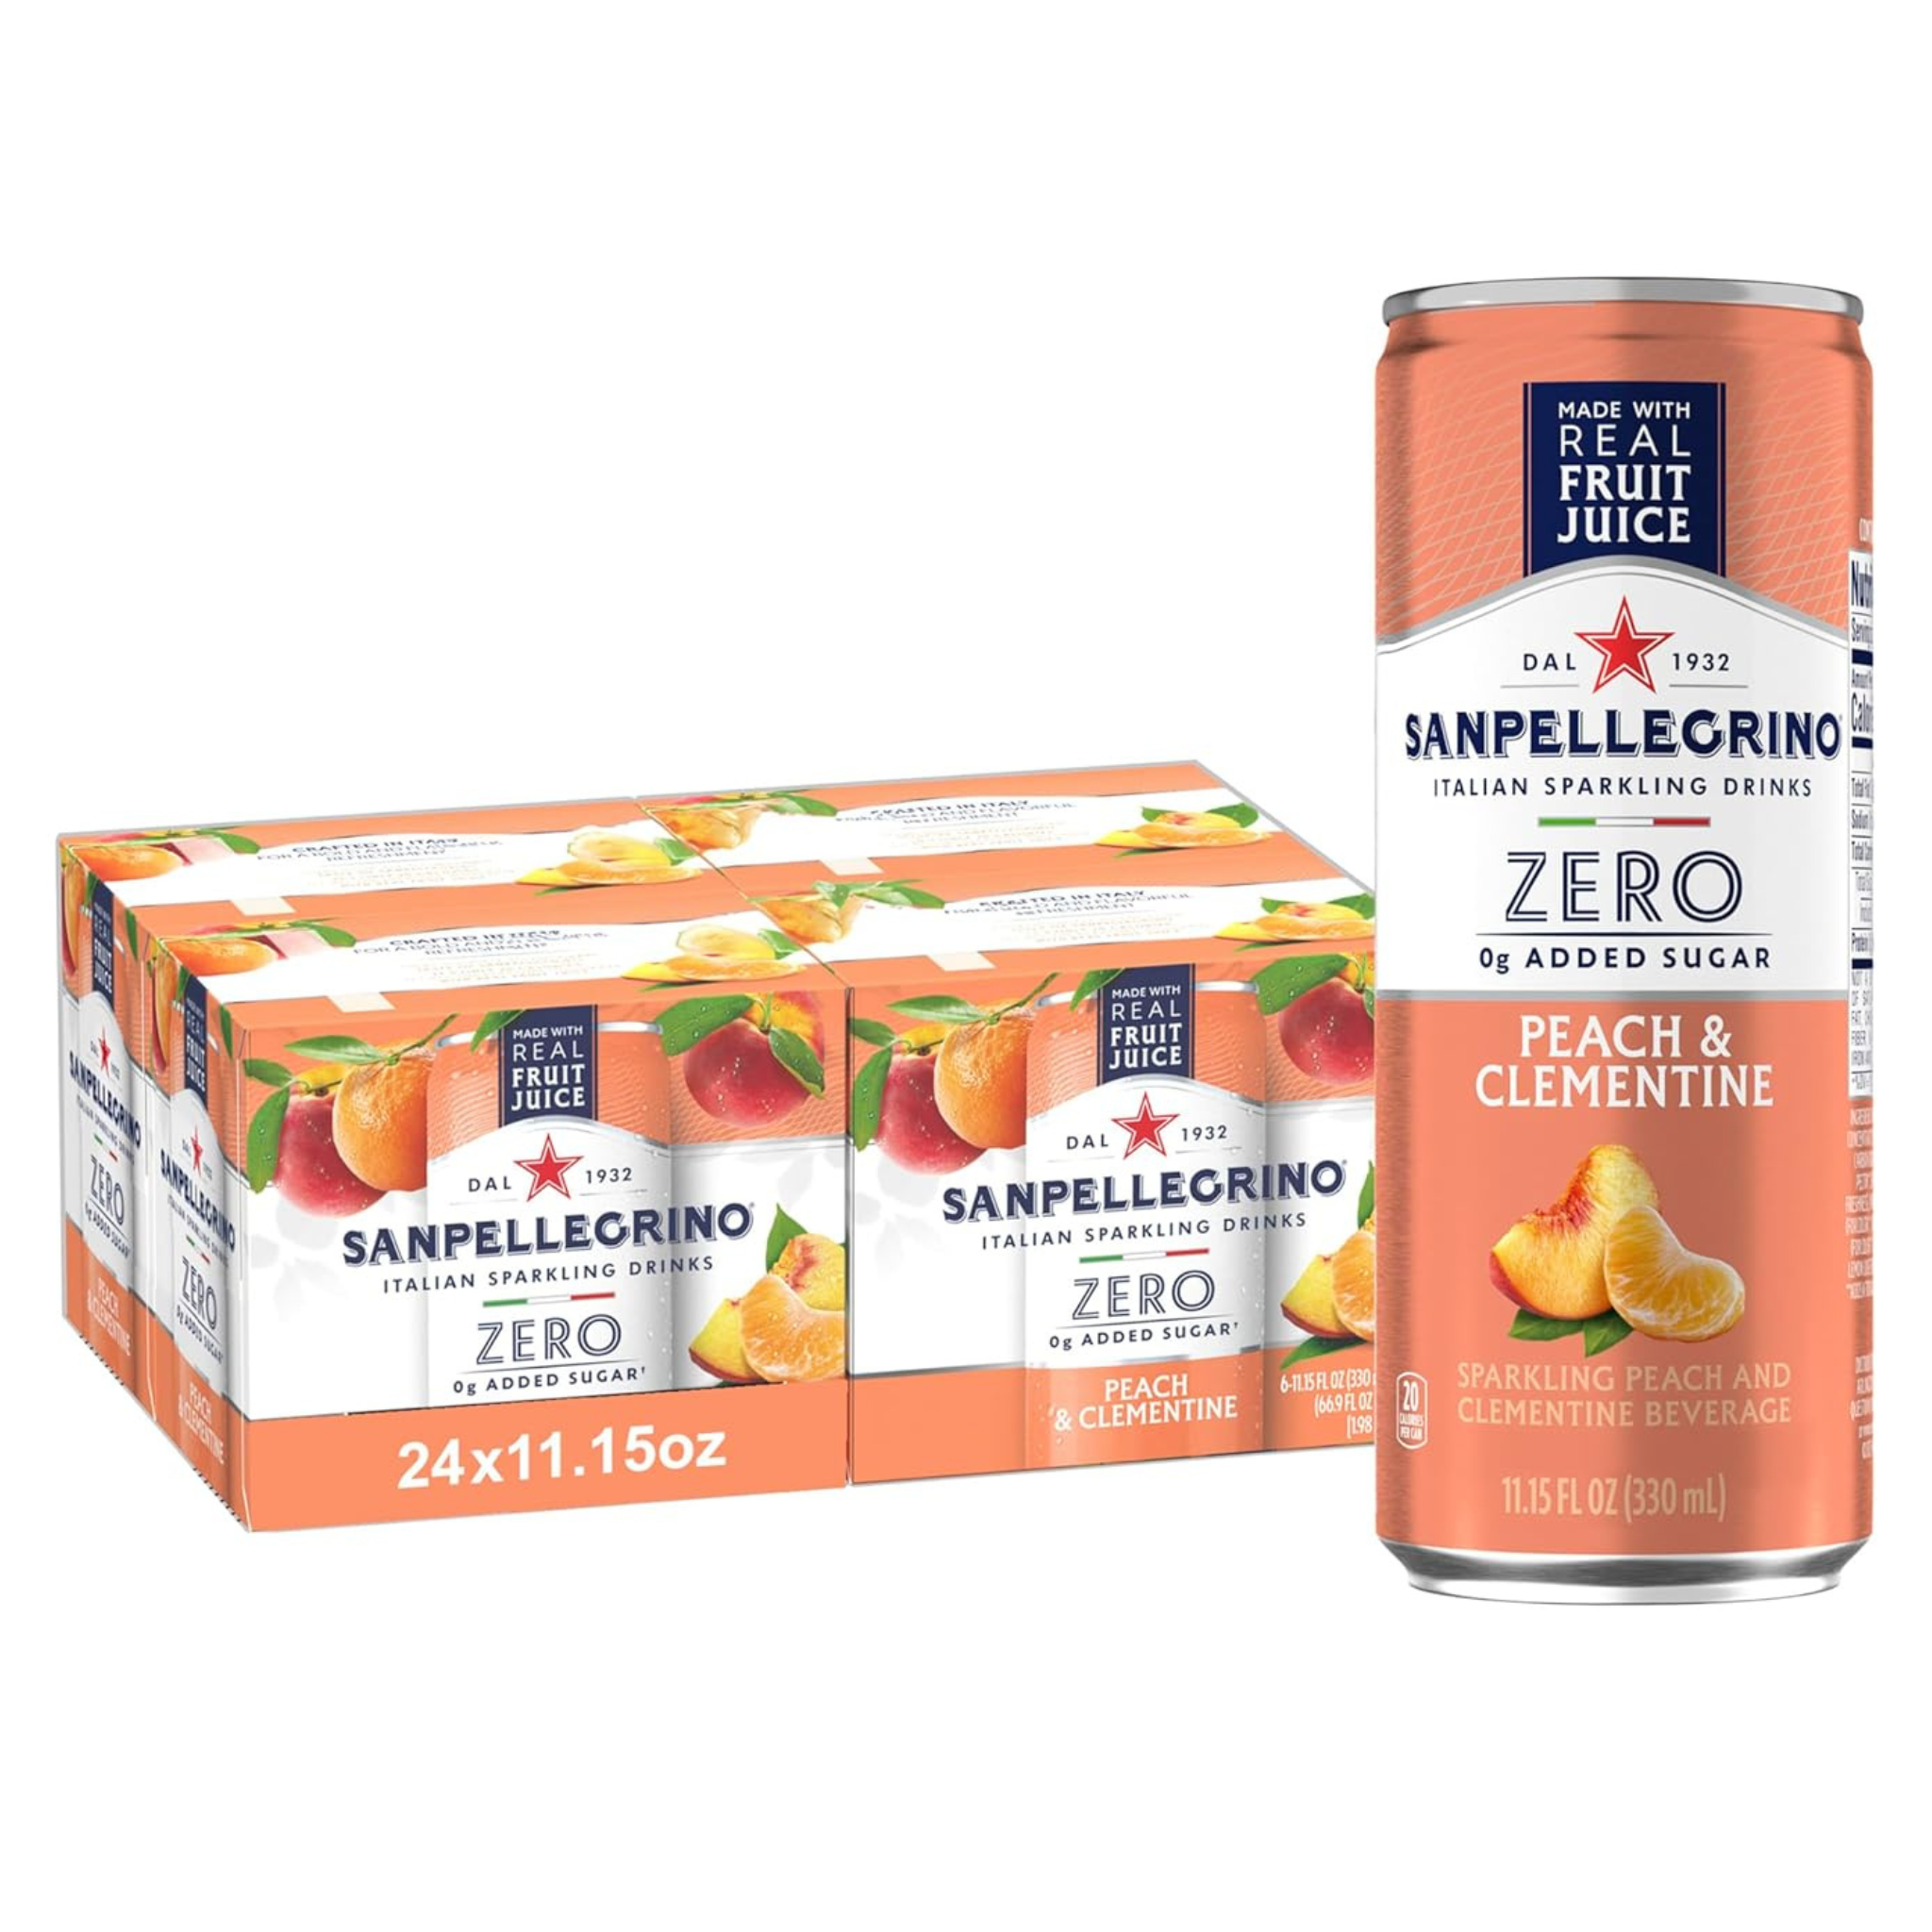 Sanpellegrino Zero Italian Sparkling Drinks, Peach Clementine Beverage (Pack of 24)